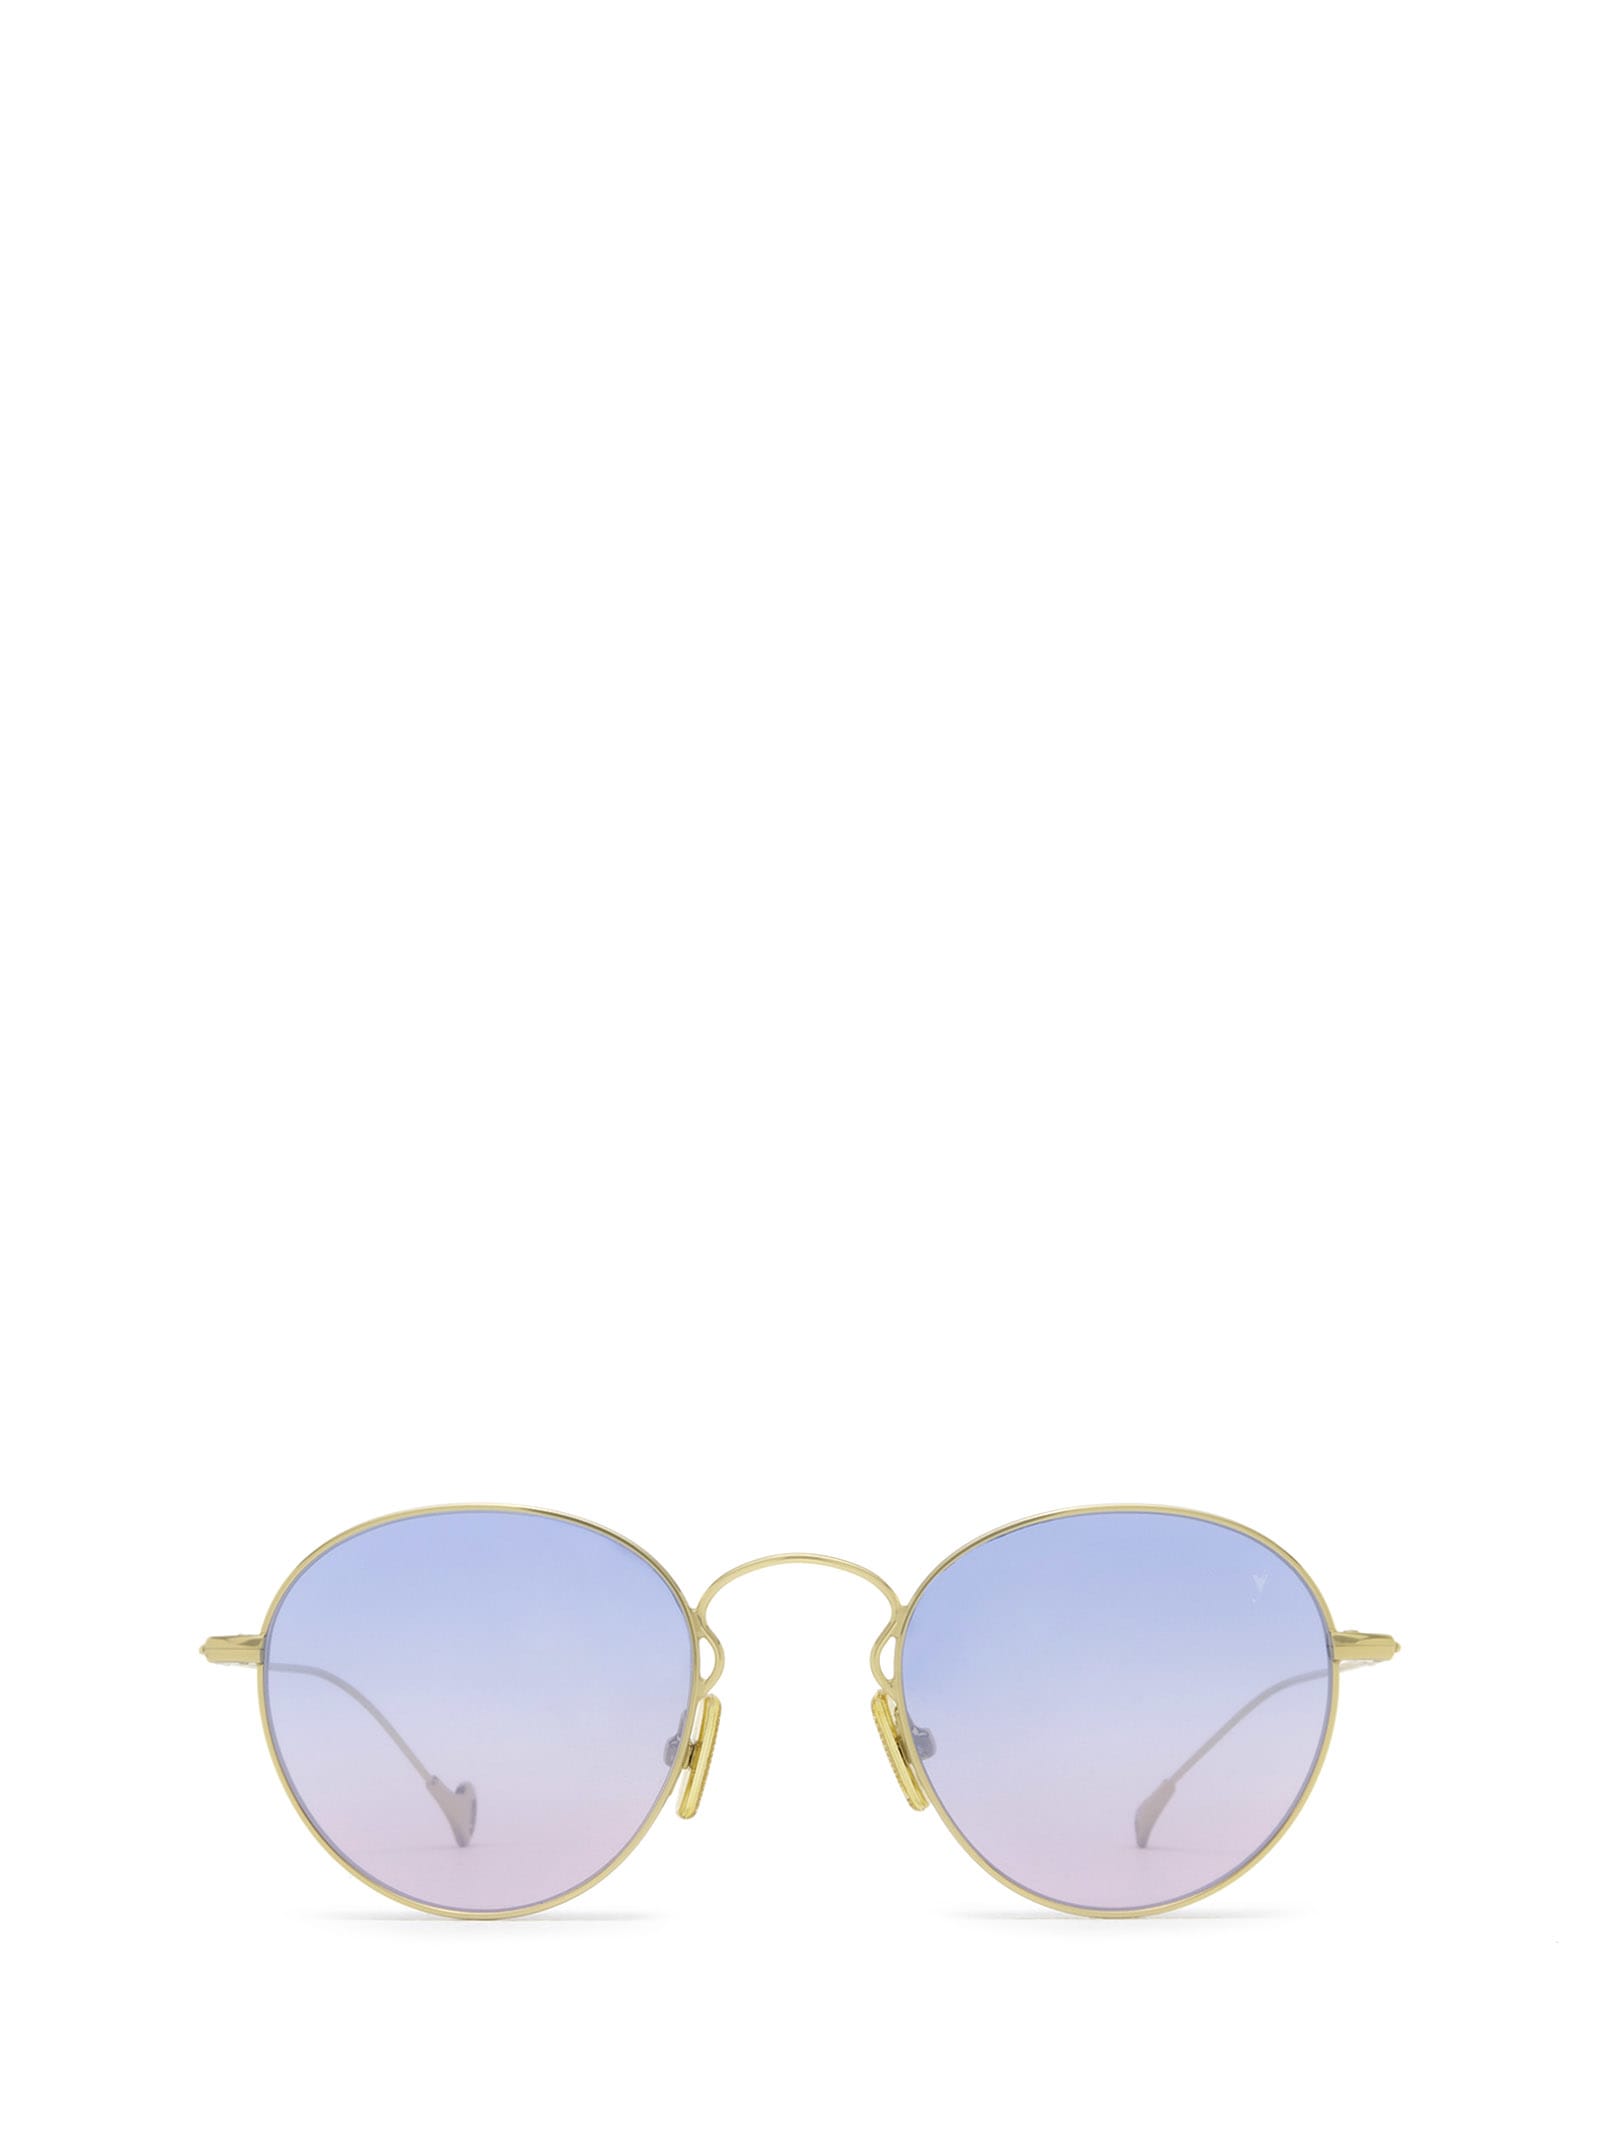 Julien Gold Sunglasses